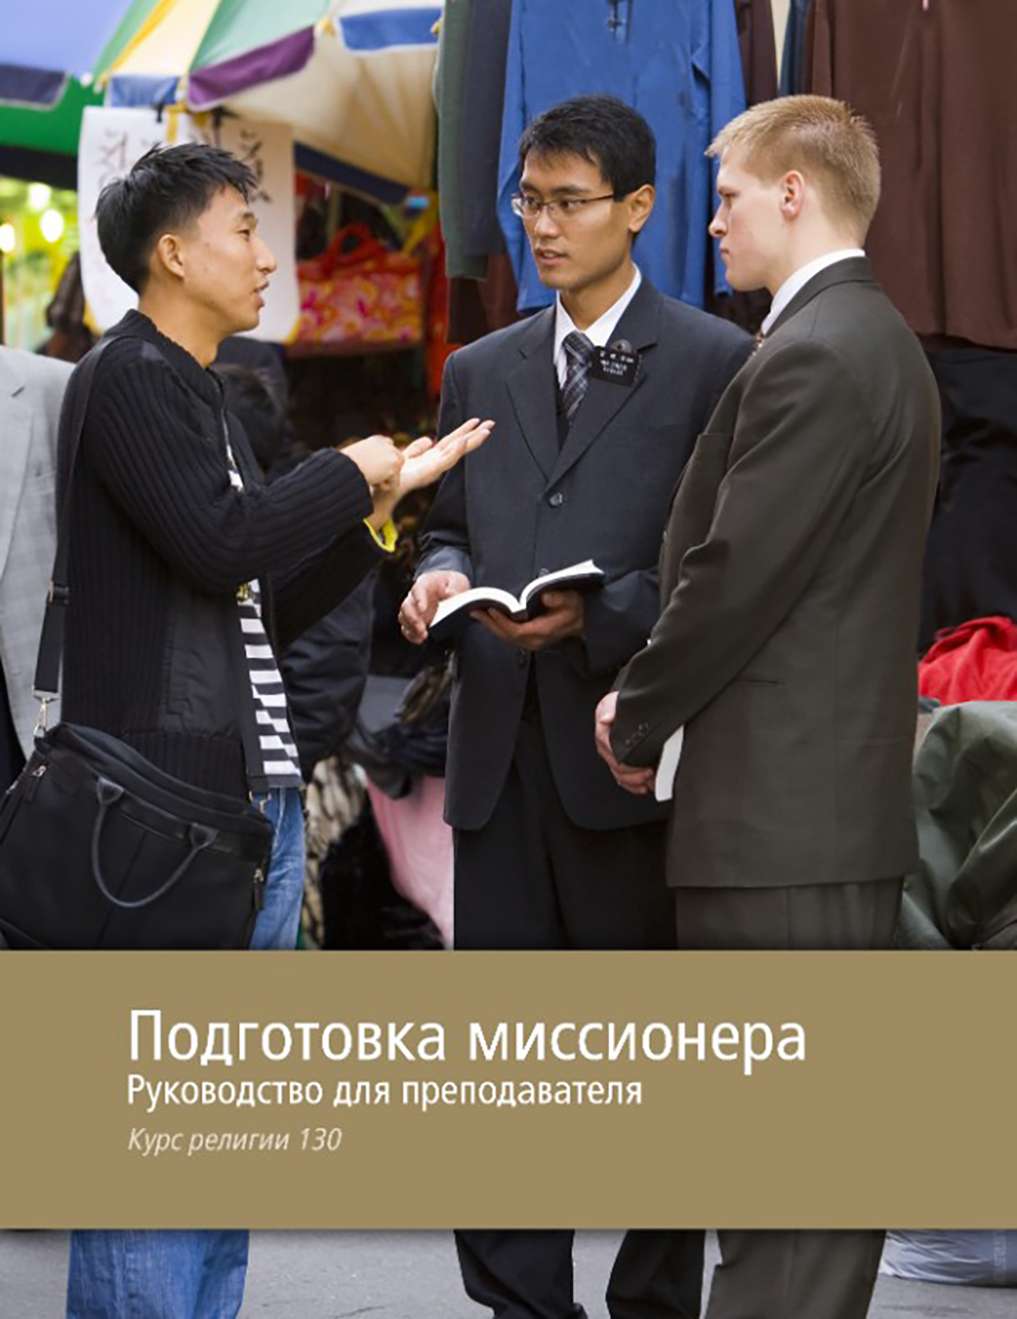 Подготовка миссионеров. Пособие для учителя (КР 130)